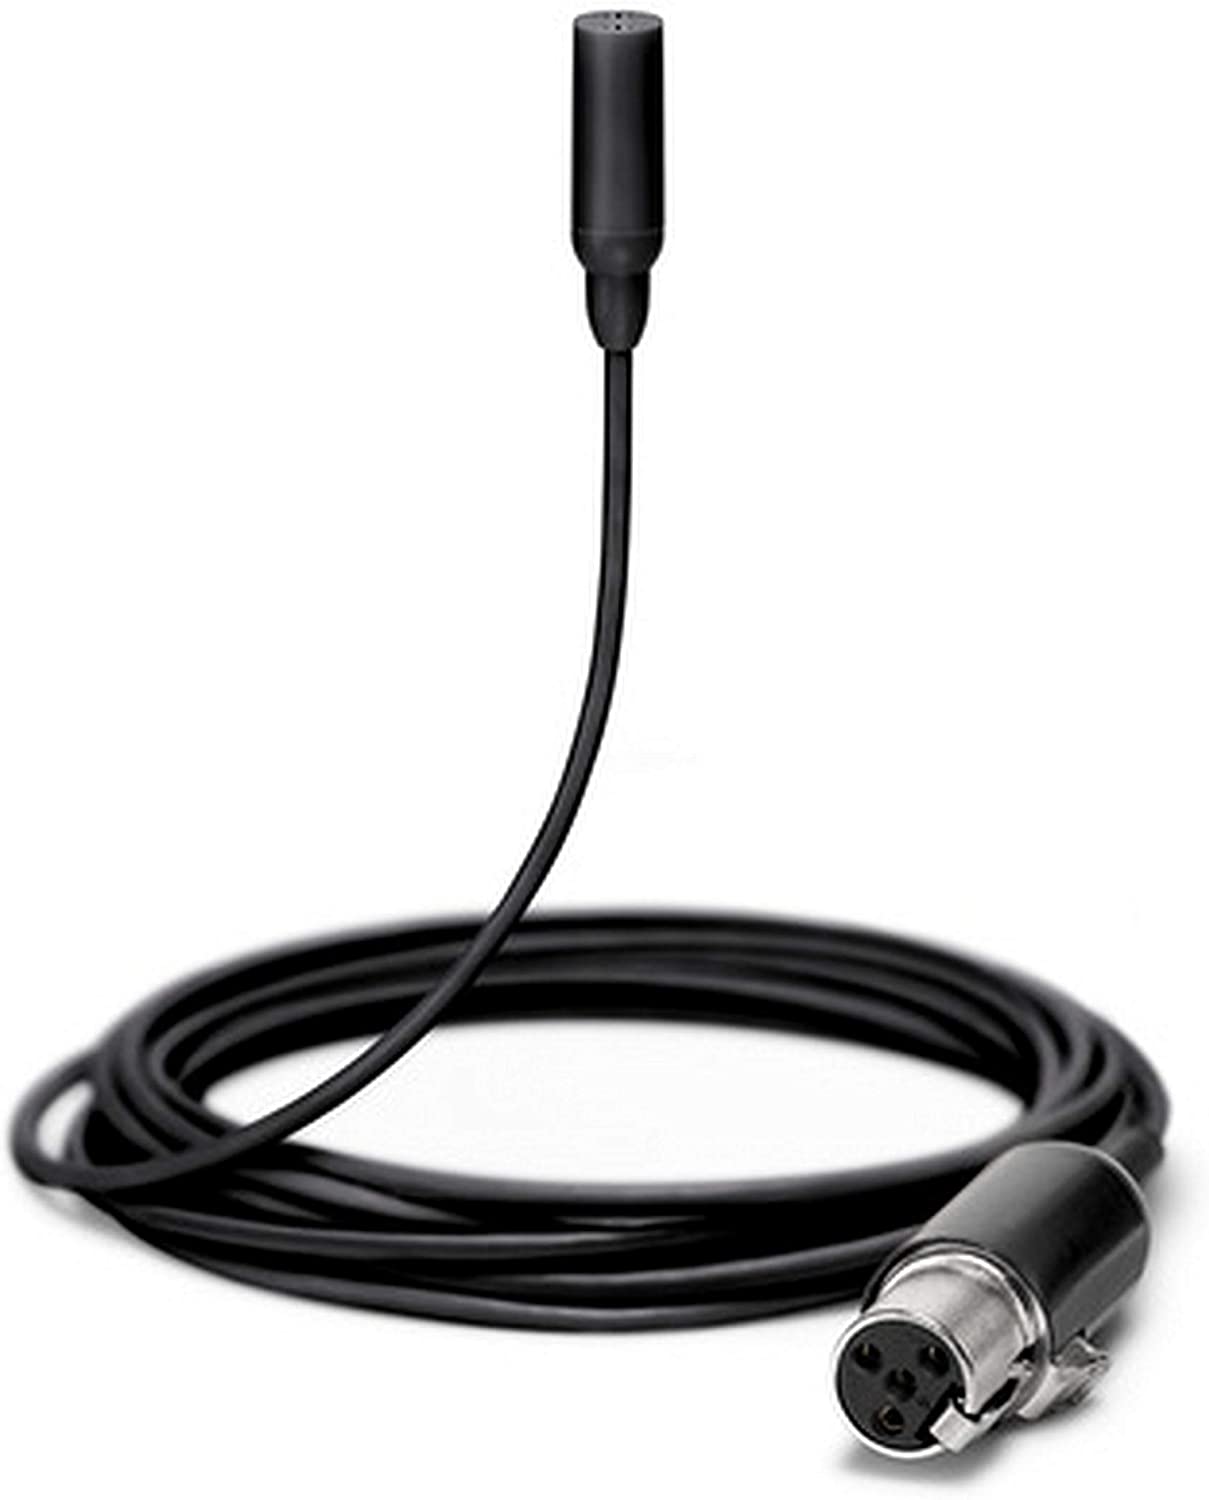 Shure general Shure tl48-Mtqg-A micrófono lavalier subminiatura con accesorios en color negro, bronceado y blanco